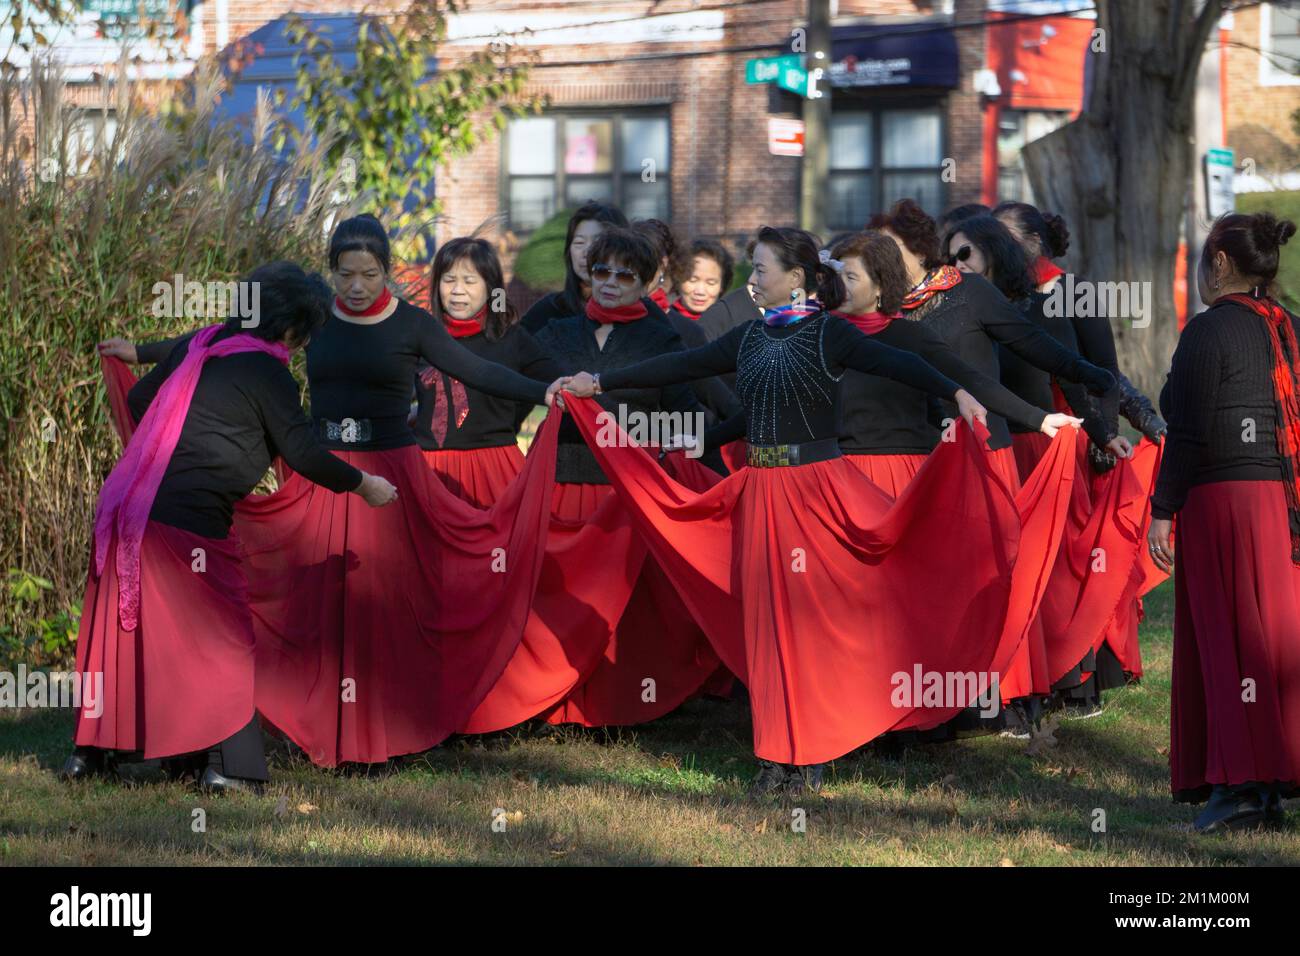 Des femmes américaines chinoises dans un groupe d'exercices de danse Yuanji posent et se préparent pour des photos dans un parc à Queens, New York. Banque D'Images